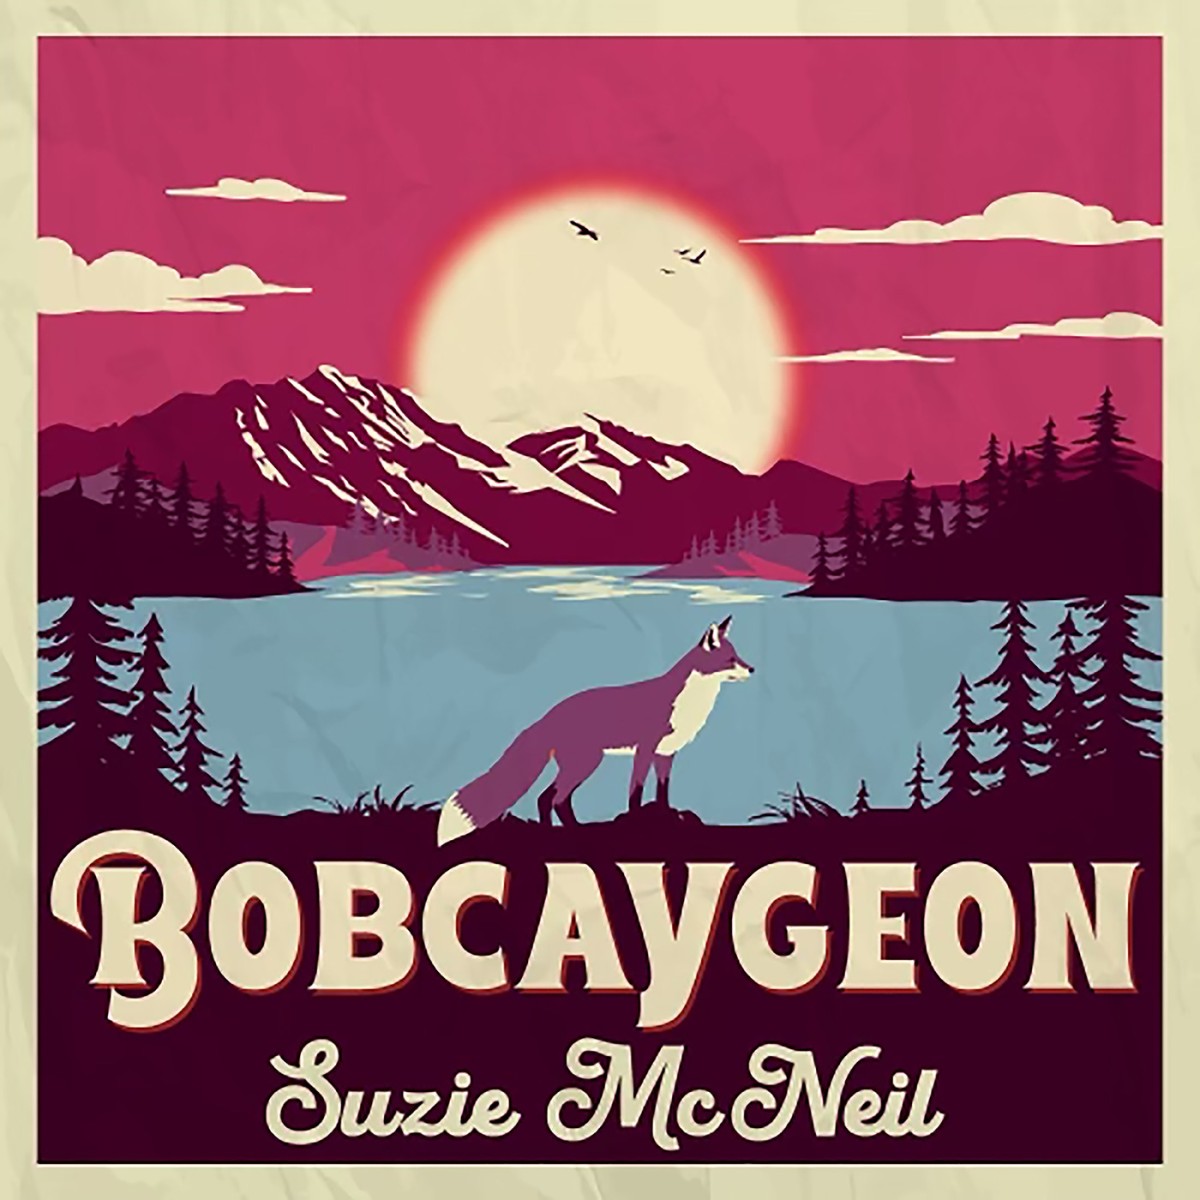 Suzie McNeil “Bobcaygeon” single artwork